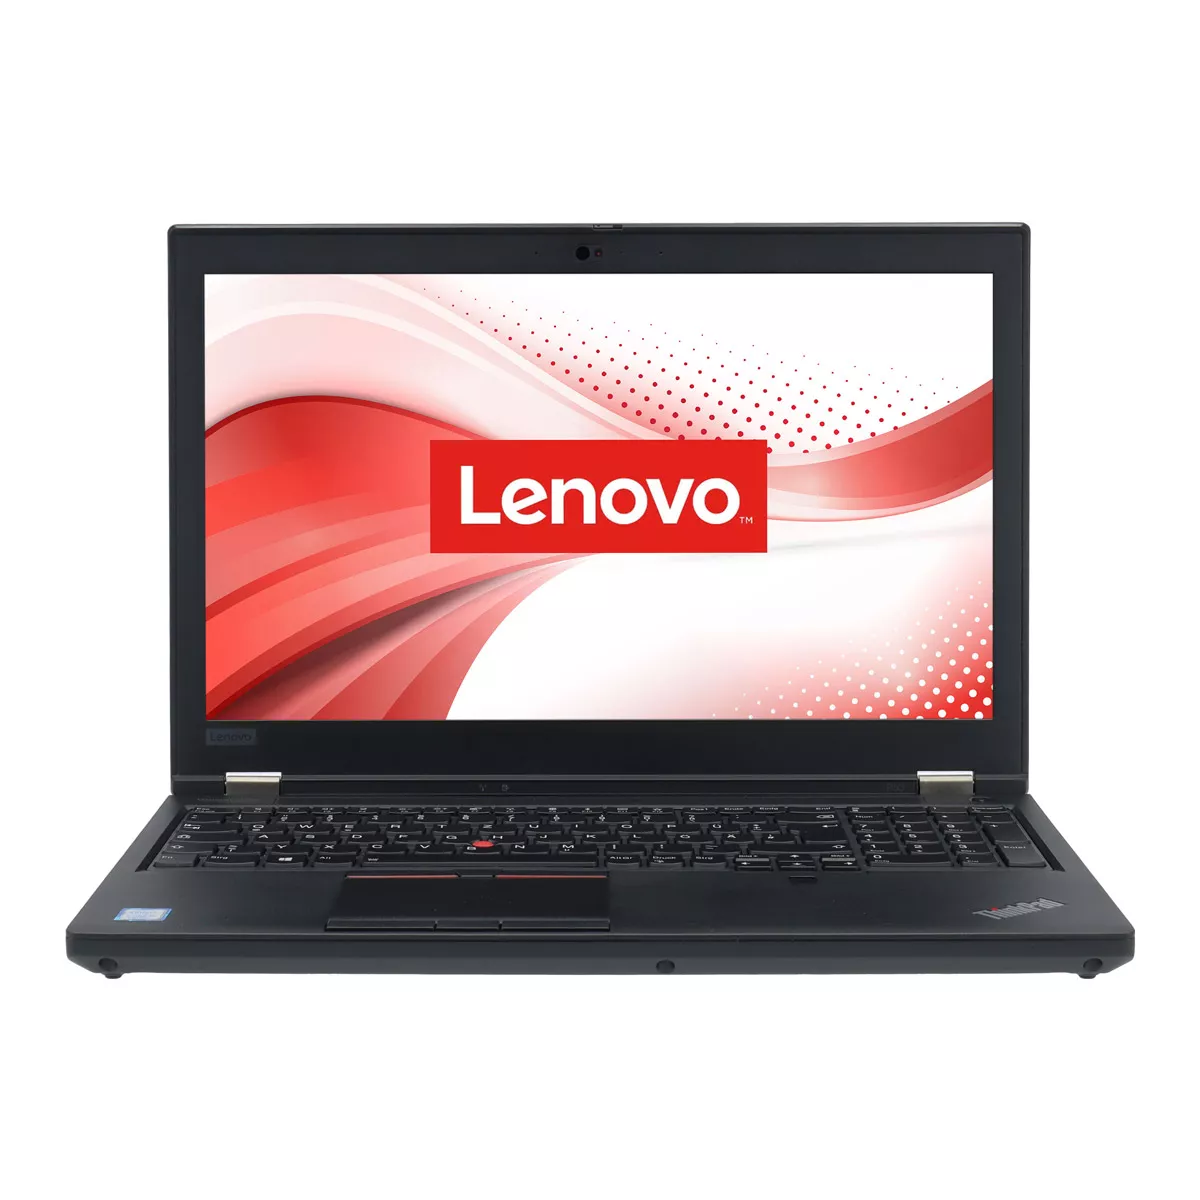 Lenovo ThinkPad P53 Core i7 9750H nVidia Quadro T1000M 32 GB 500 GB M.2 SSD Webcam A+